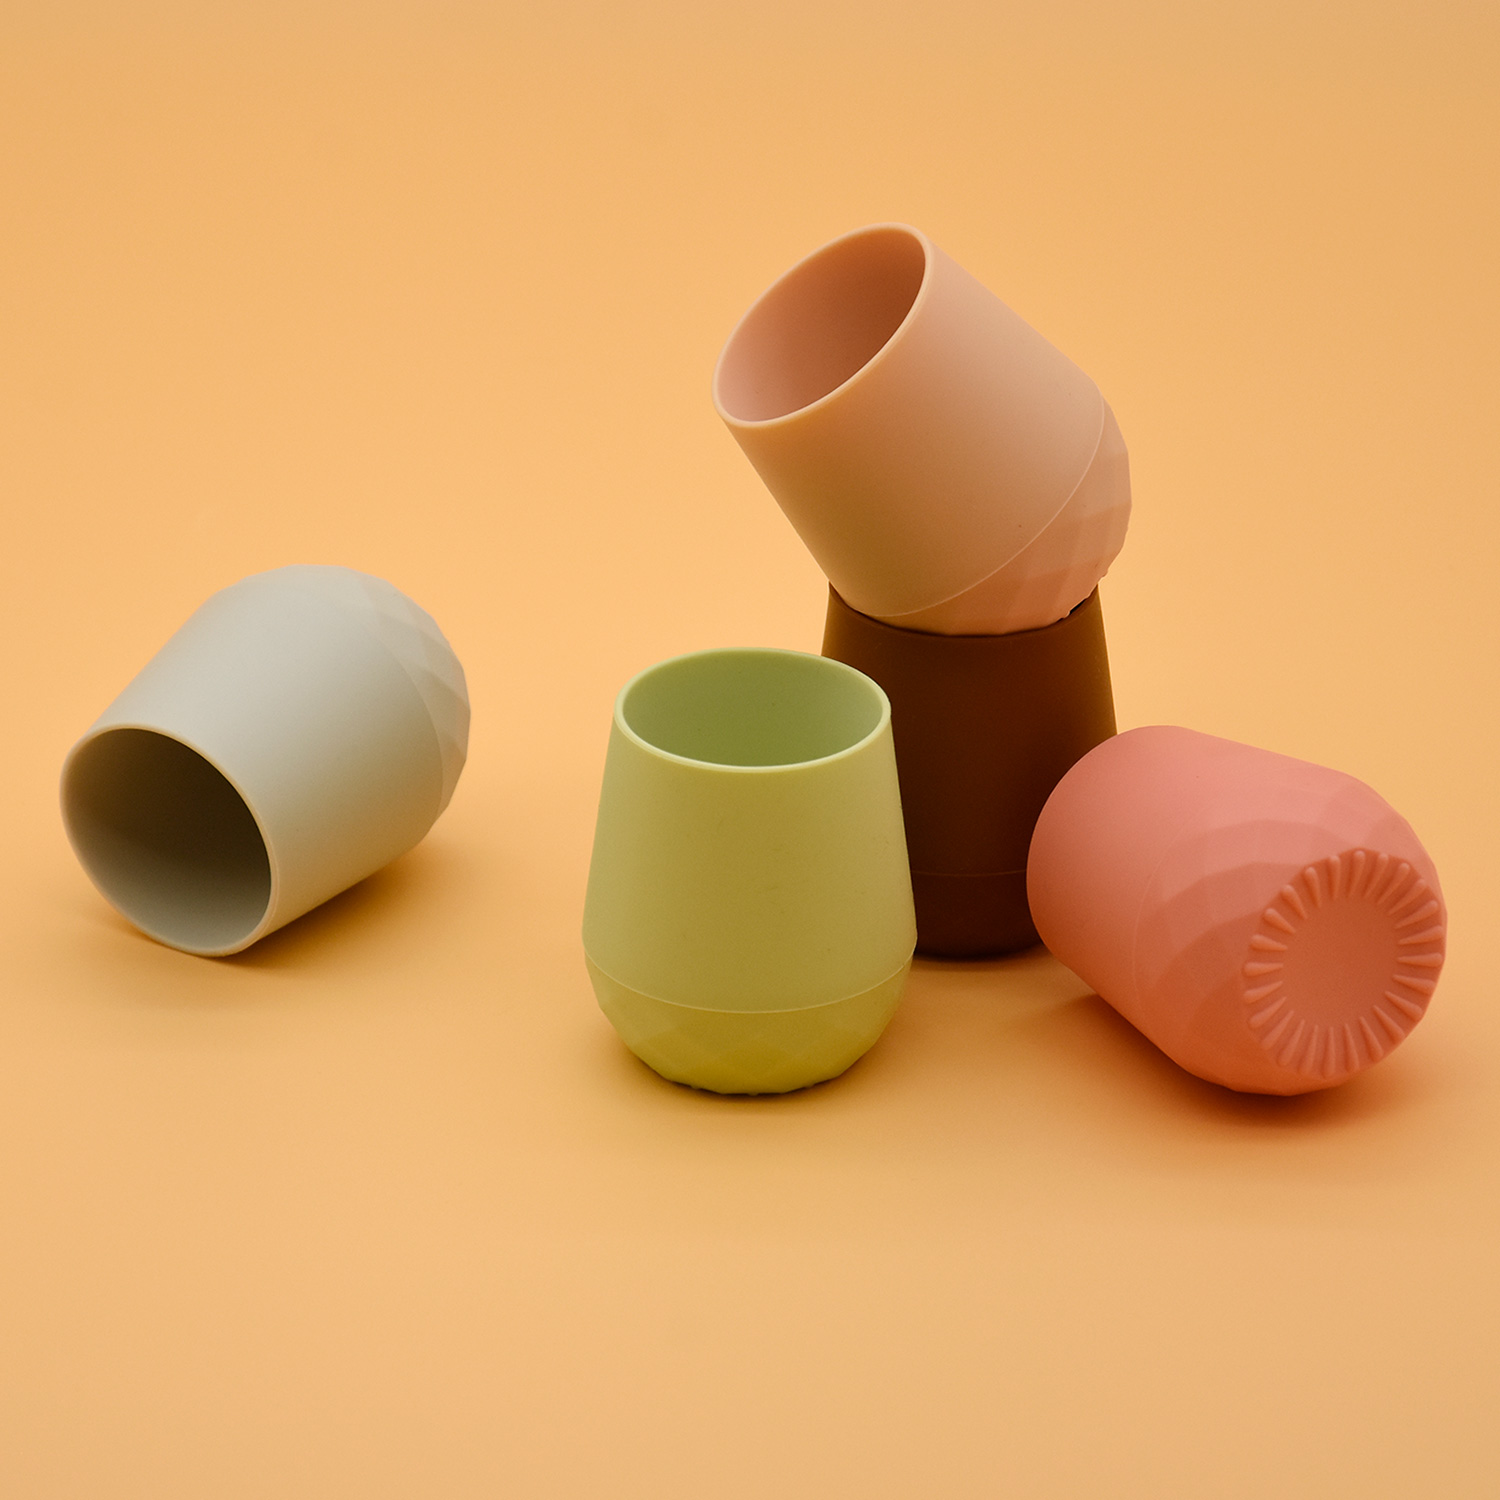 에코 친화적 인 유아 Sippy 컵 유아 작은 마시는 훈련 컵 안티 쵸크 디자인 실리콘 아기 컵을 잡고 쉽게